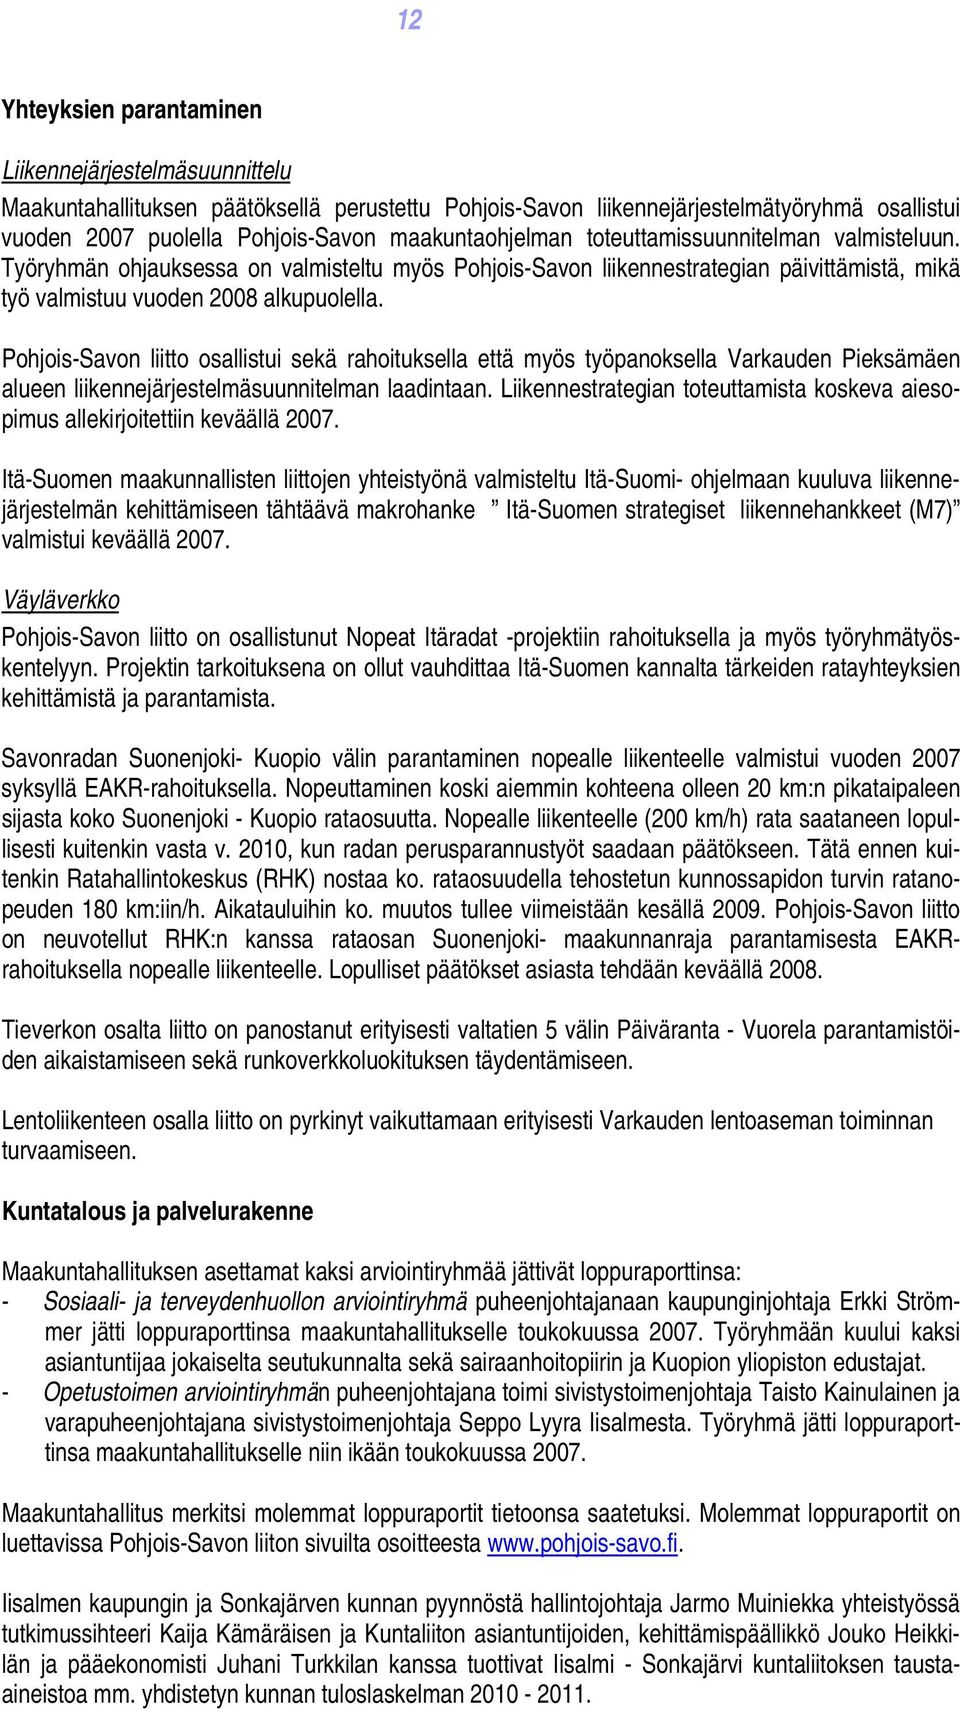 Pohjois-Savon liitto osallistui sekä rahoituksella että myös työpanoksella Varkauden Pieksämäen alueen liikennejärjestelmäsuunnitelman laadintaan.